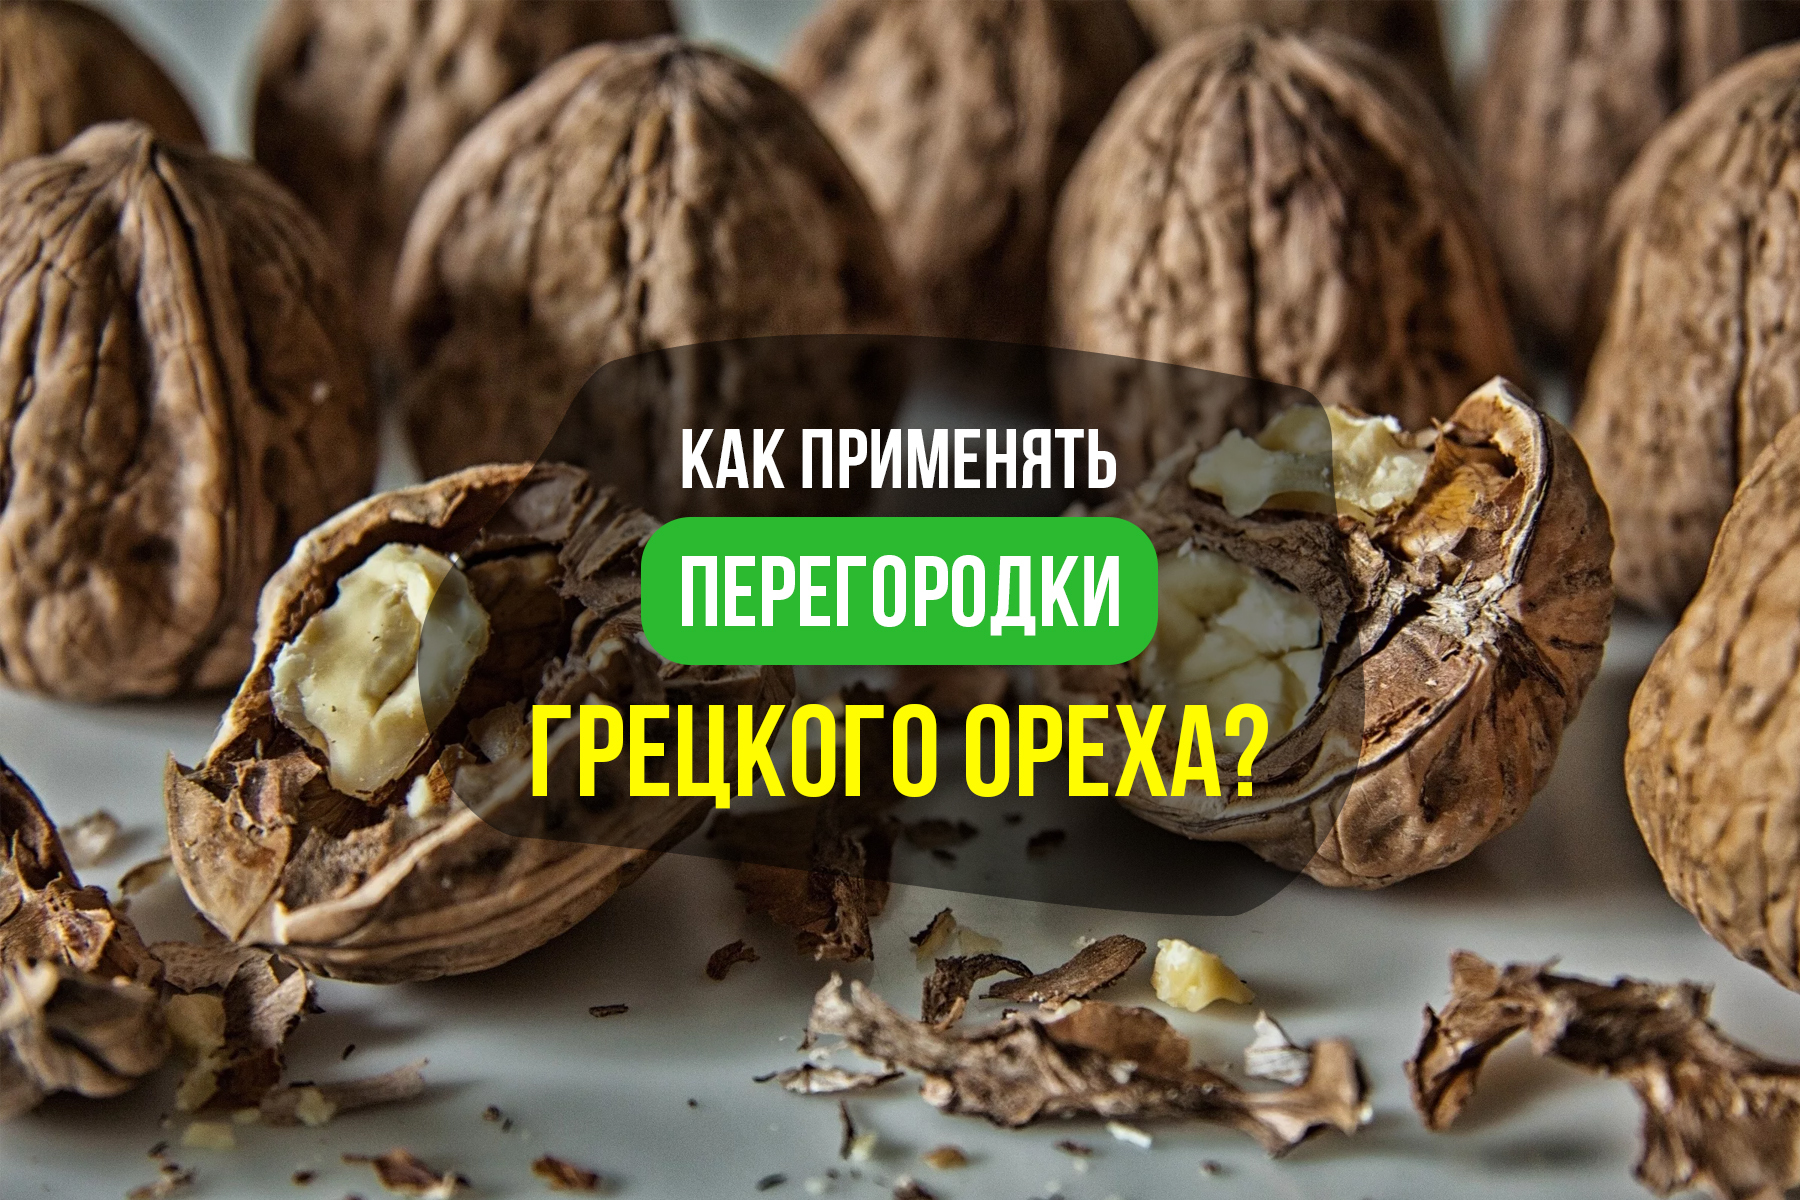 Как принимать перегородки грецкого ореха?